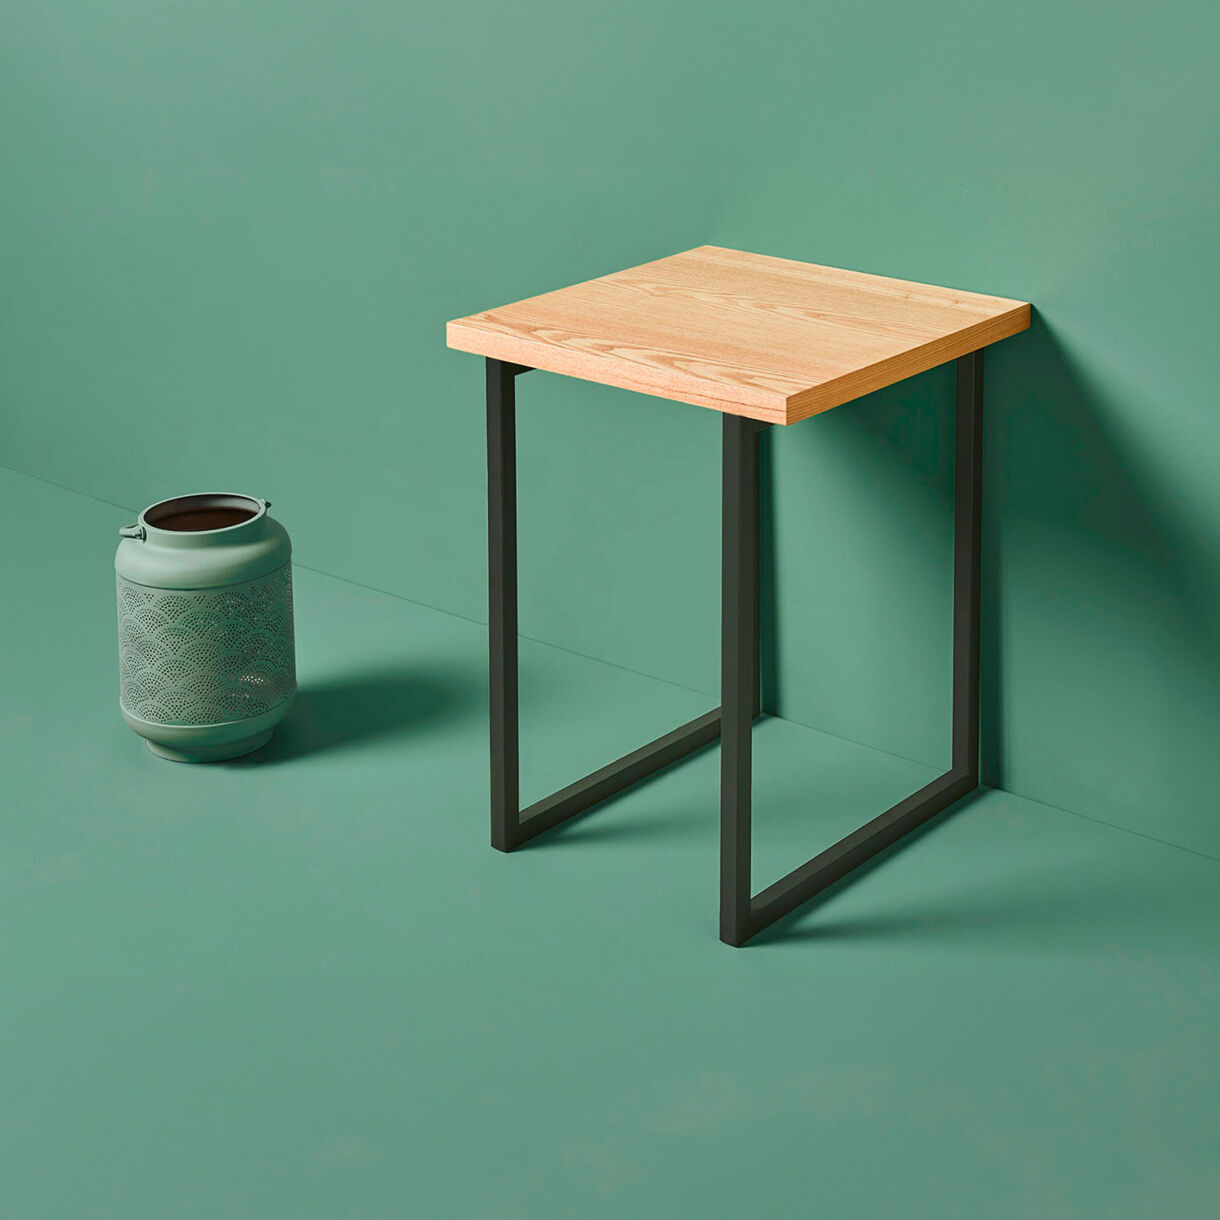 Table d'appoint carrée bois et métal (H50 cm) Mokka